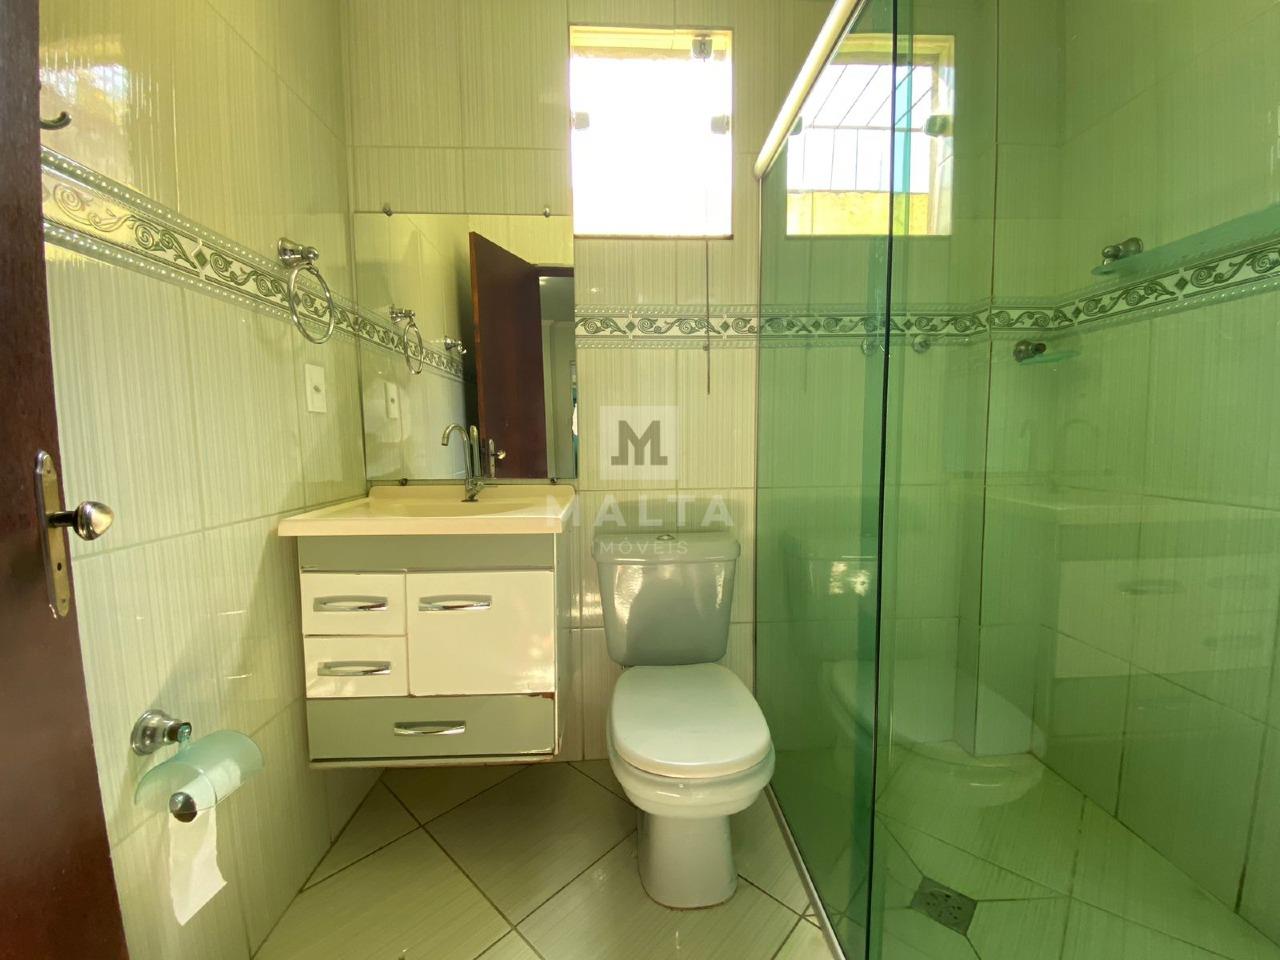 Casa à venda no bairro Marilândia de 4 quartos: Banheiro do primeiro nível